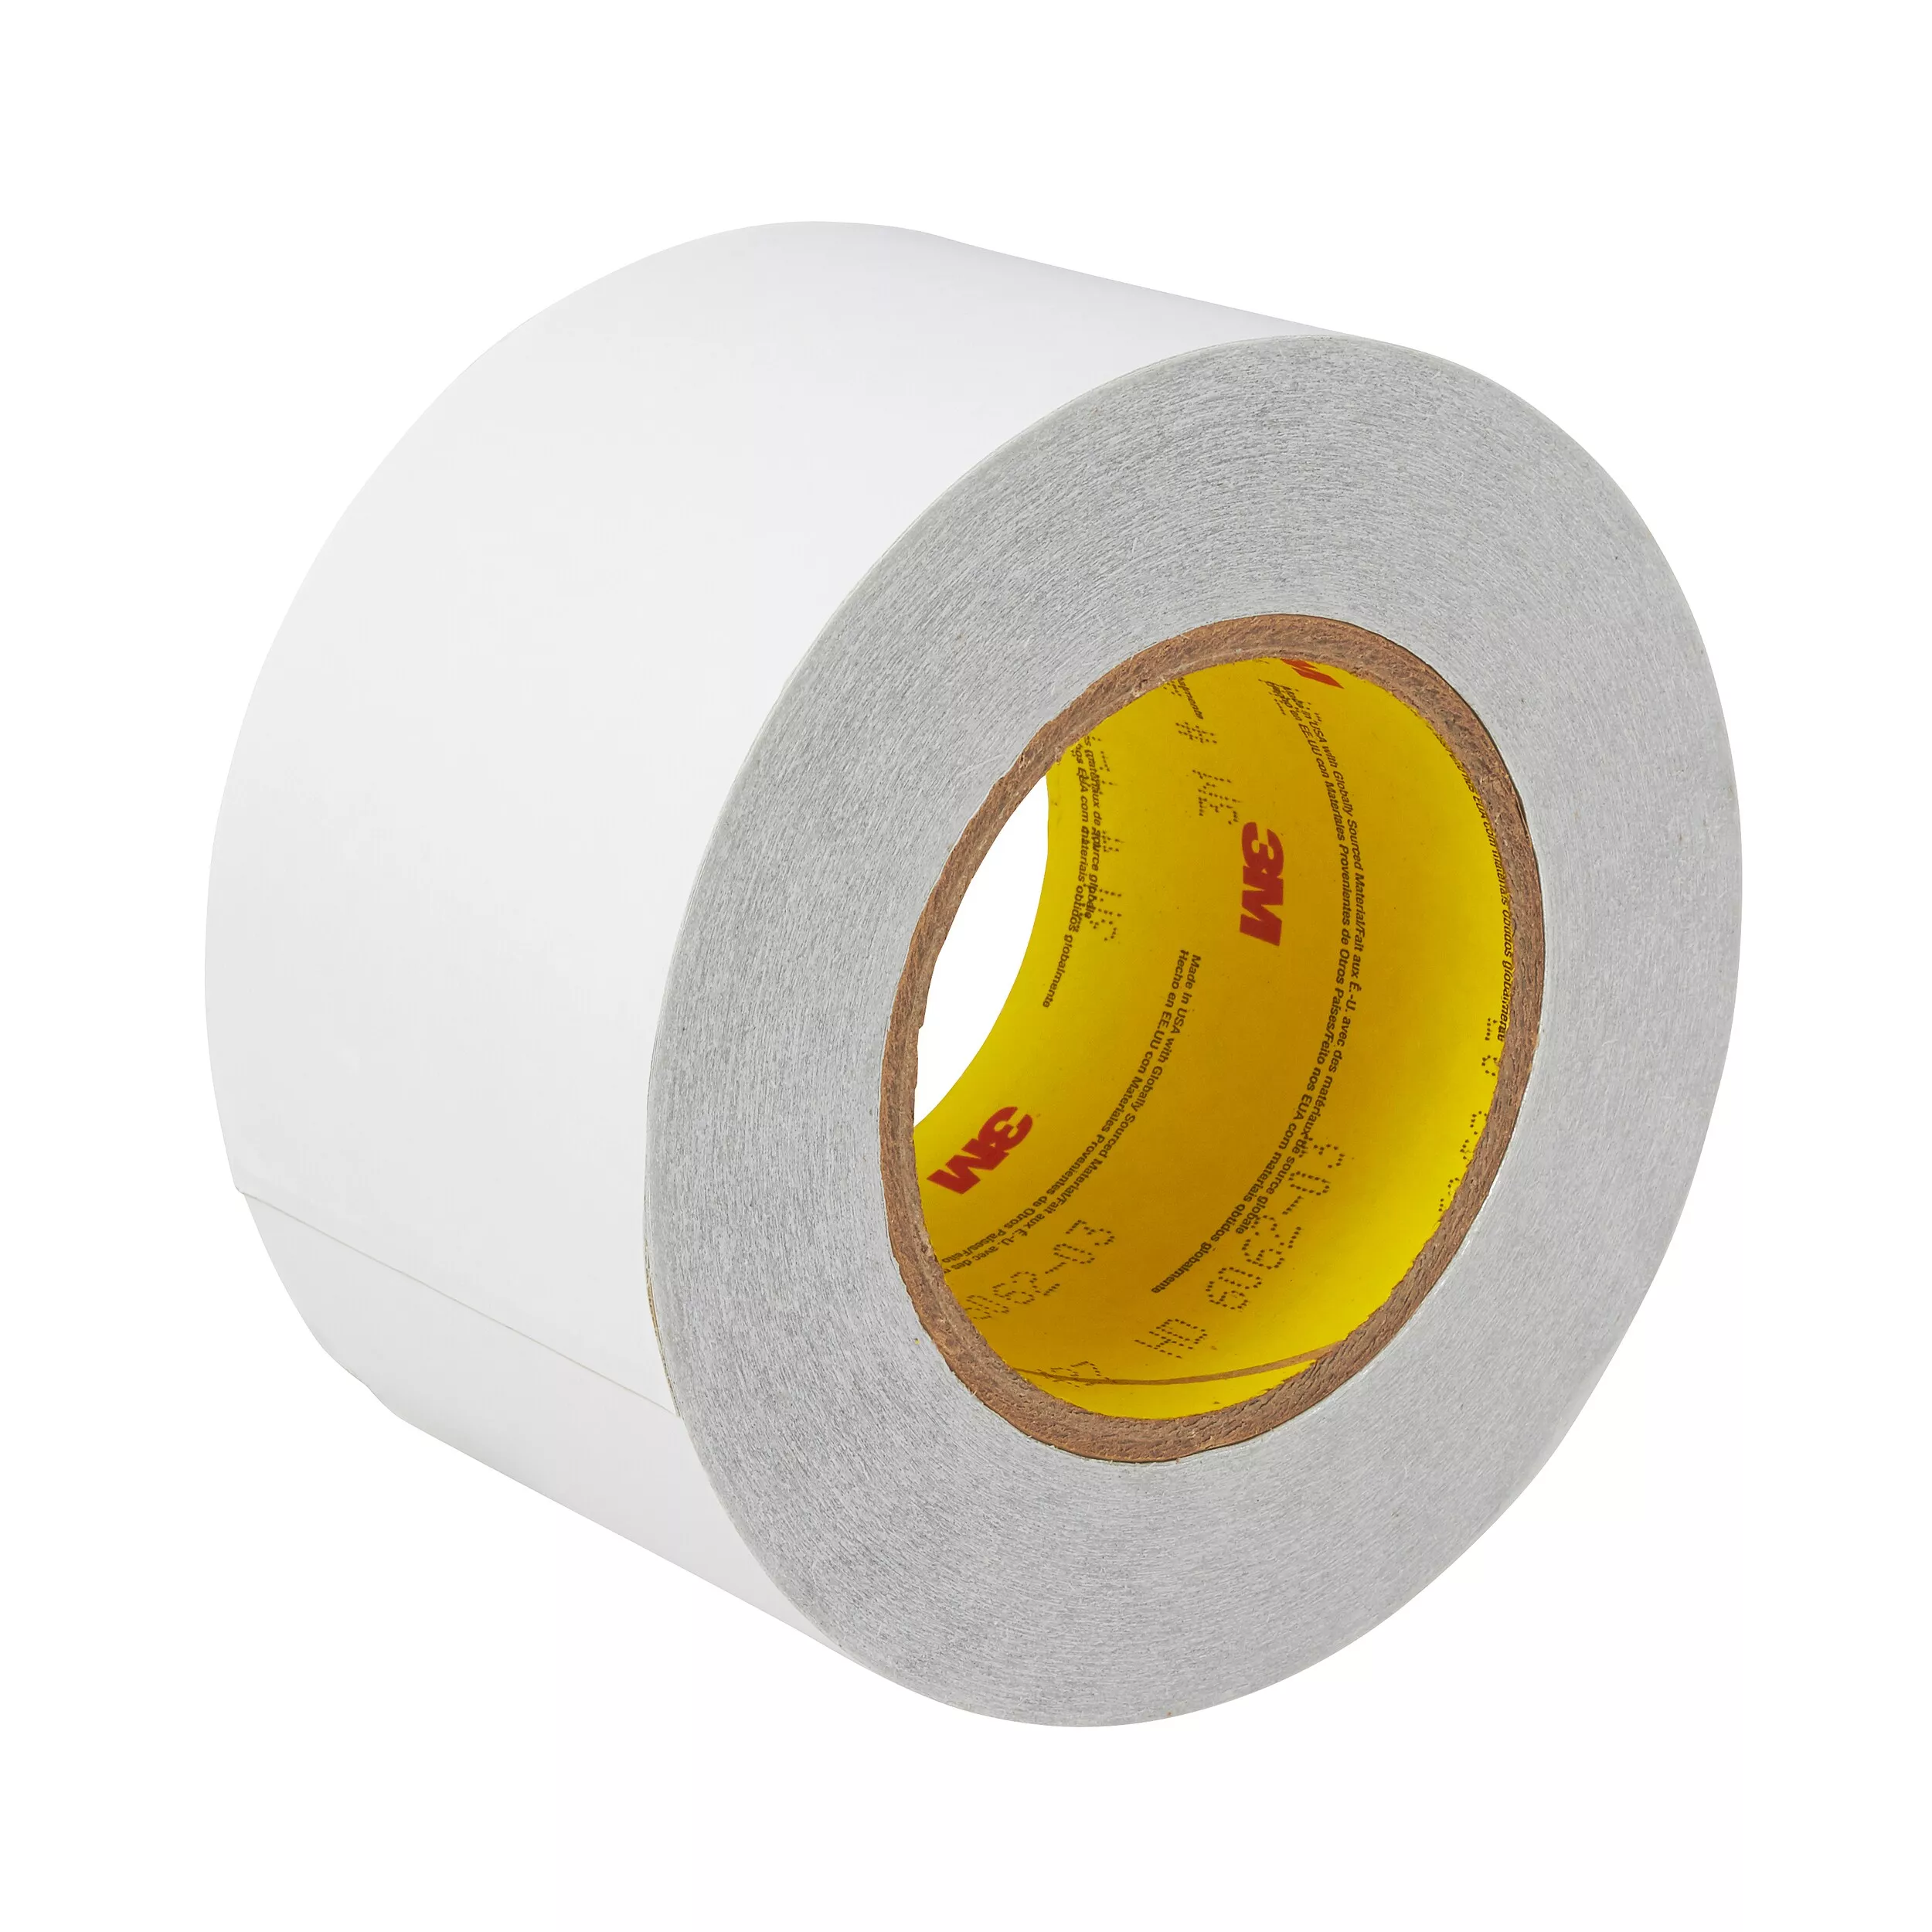 3M™ Aluminum Foil Tape 427, Silver, 6 in x 60 yd, 4.6 mil, 2 rolls per
case